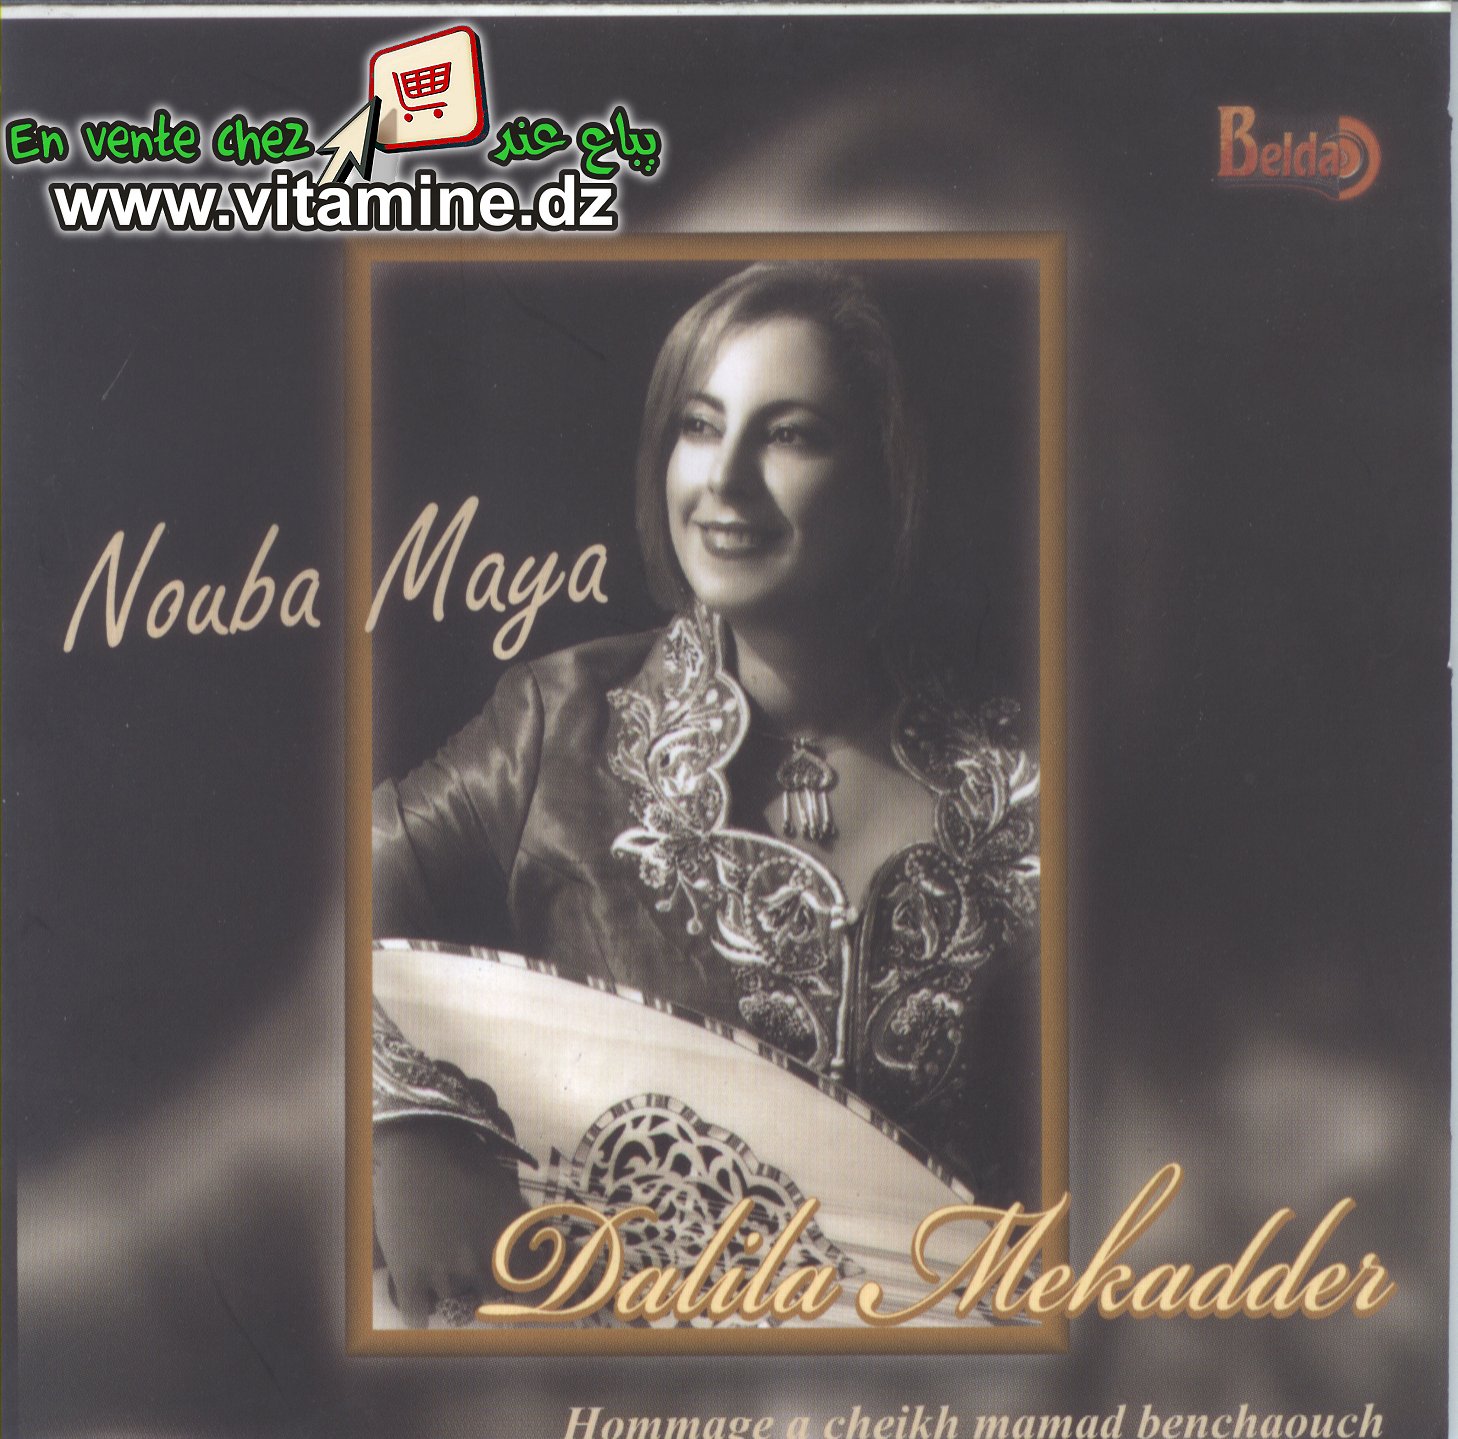 Dalila Mekadder - nouba maya